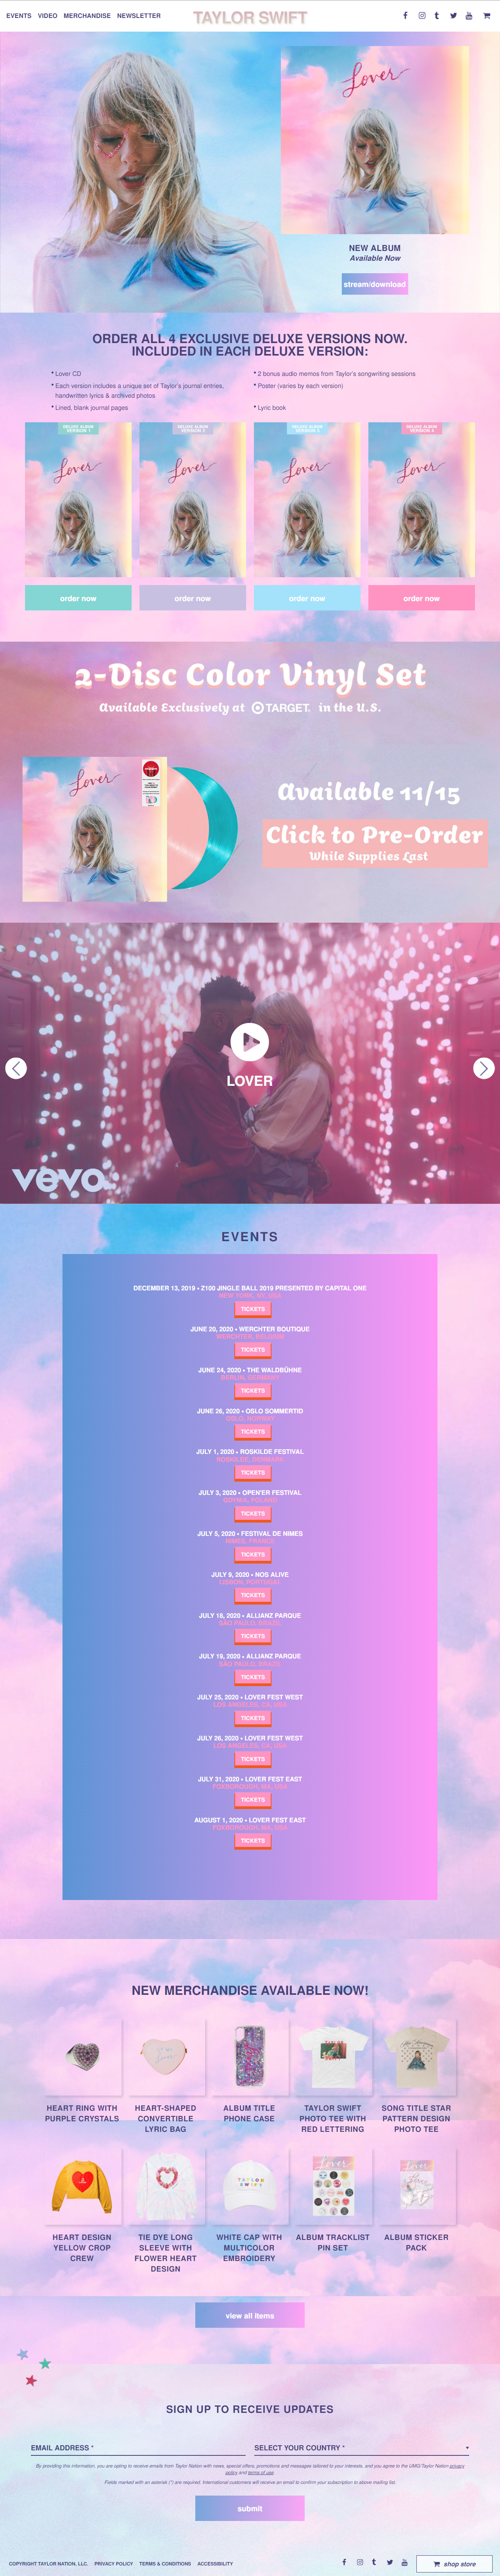 Taylor Swift website in 2019